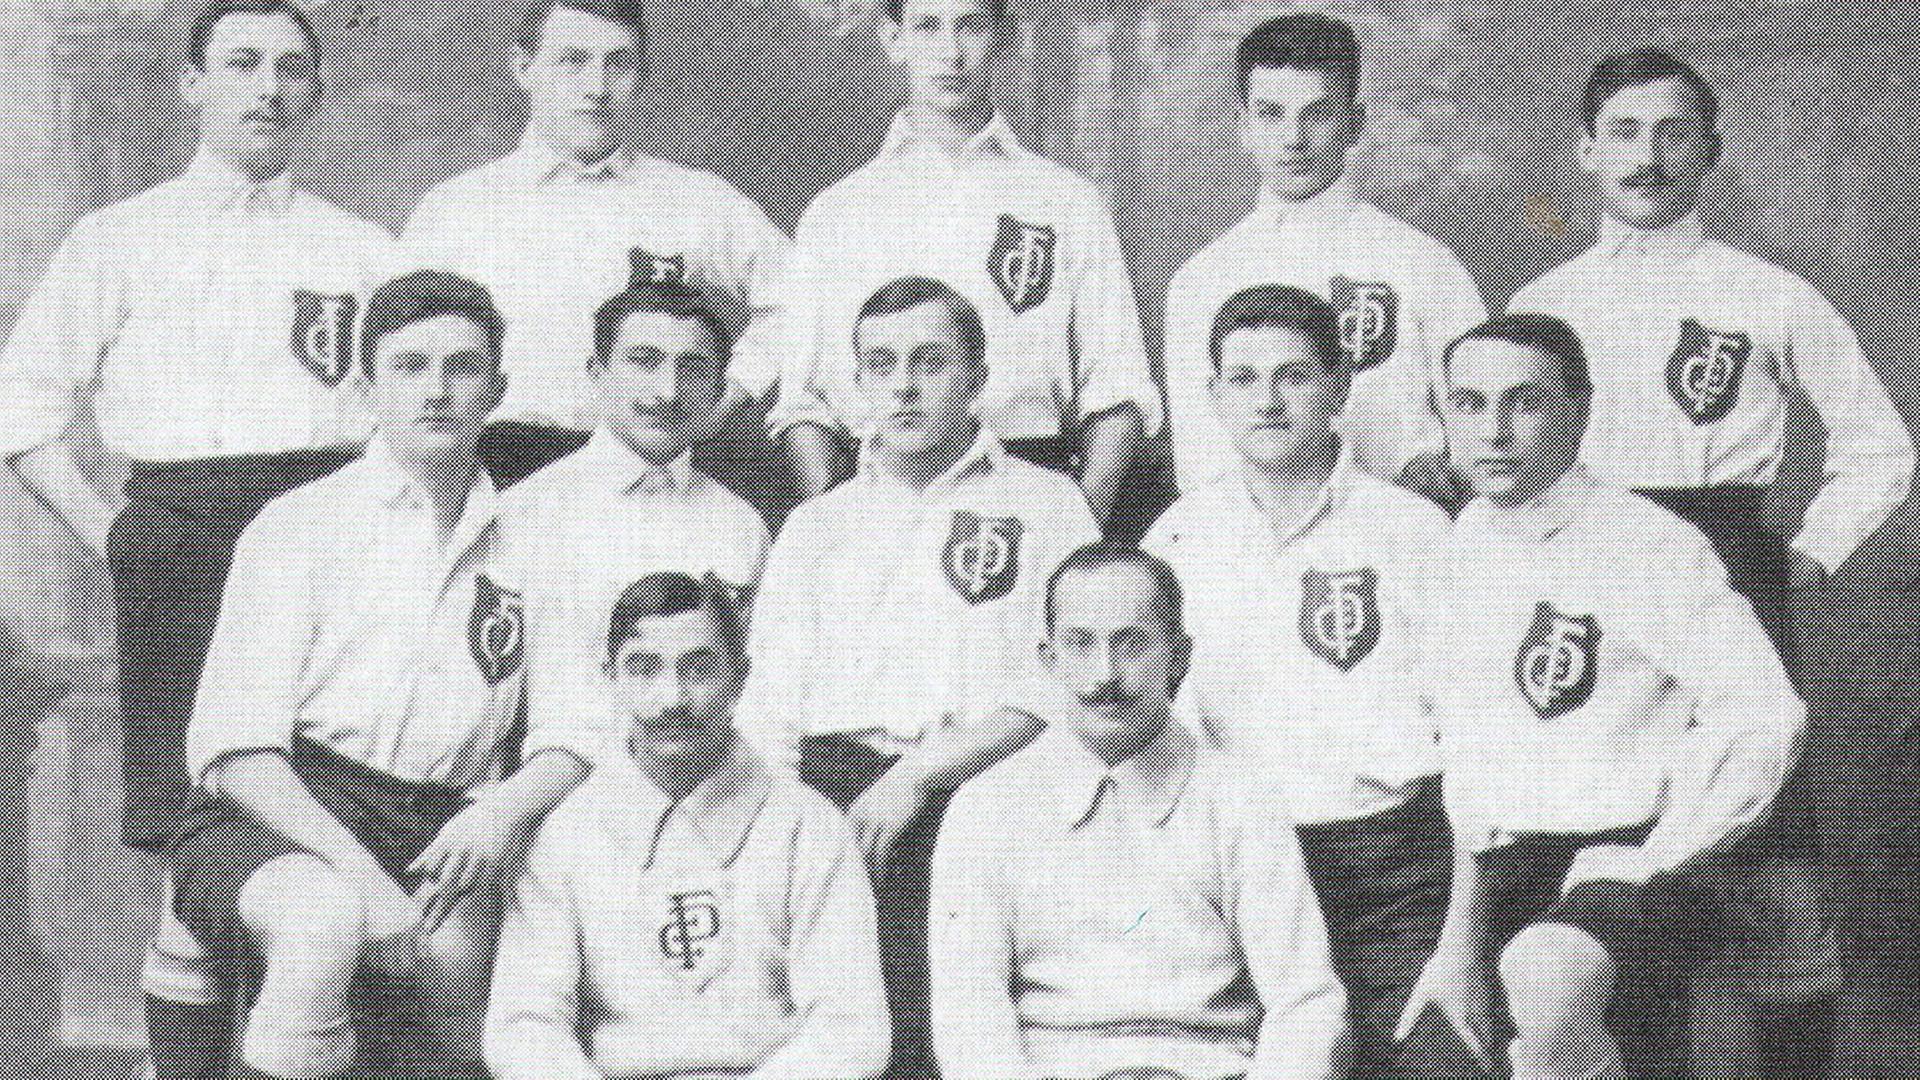 Deutscher Fußball-Club Prag